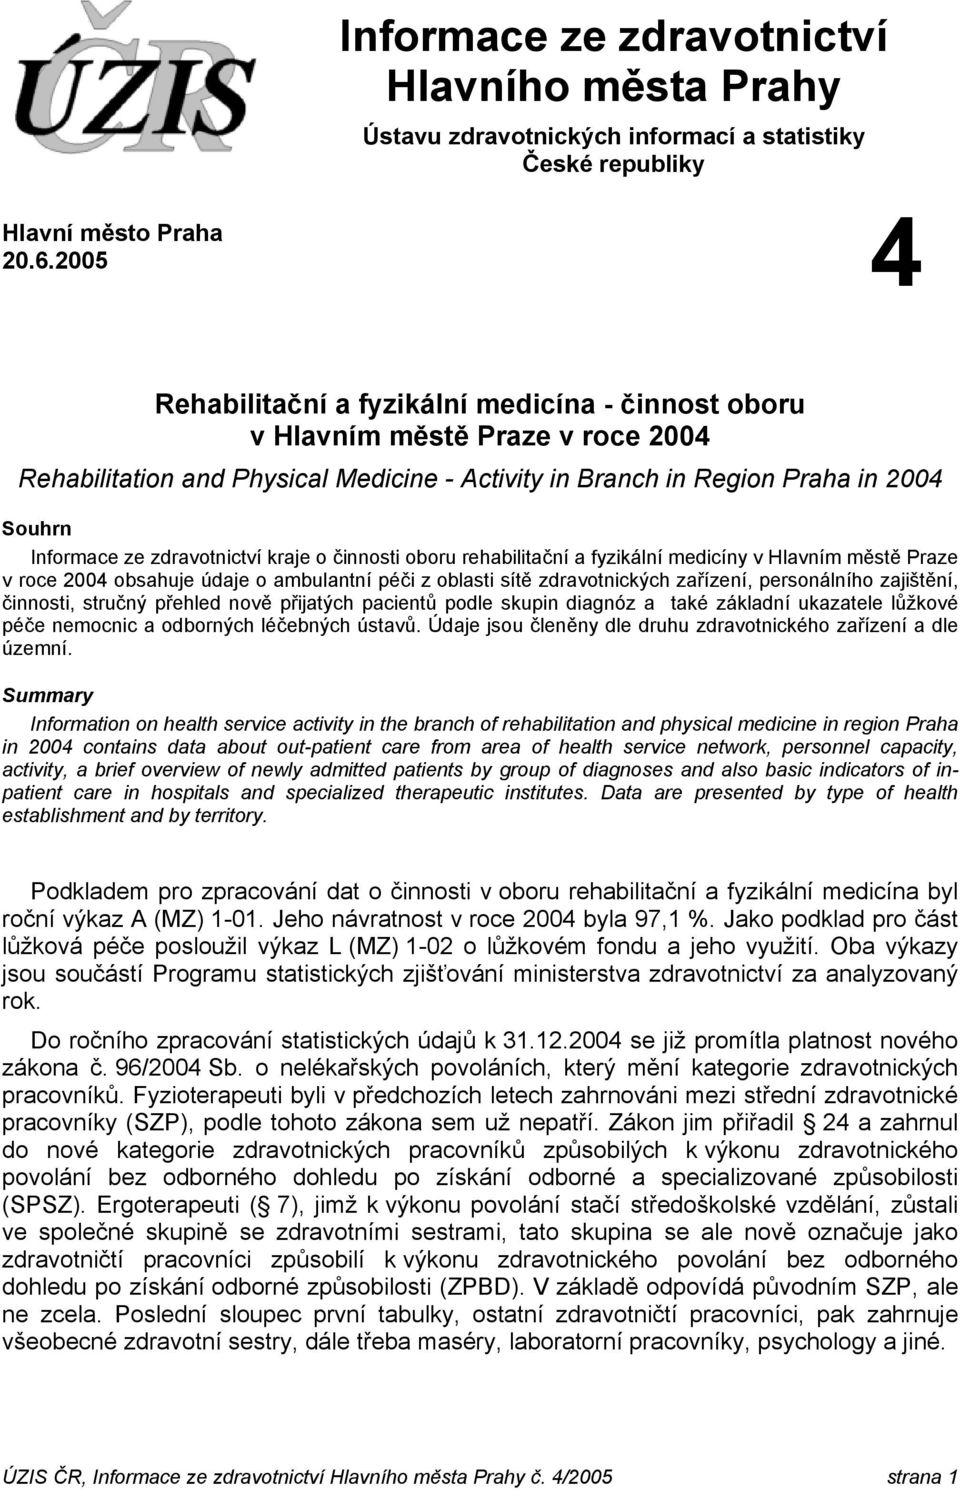 zdravotnictví kraje o činnosti oboru rehabilitační a fyzikální medicíny v Hlavním městě Praze v roce 2004 obsahuje údaje o ambulantní péči z oblasti sítě zdravotnických zařízení, personálního